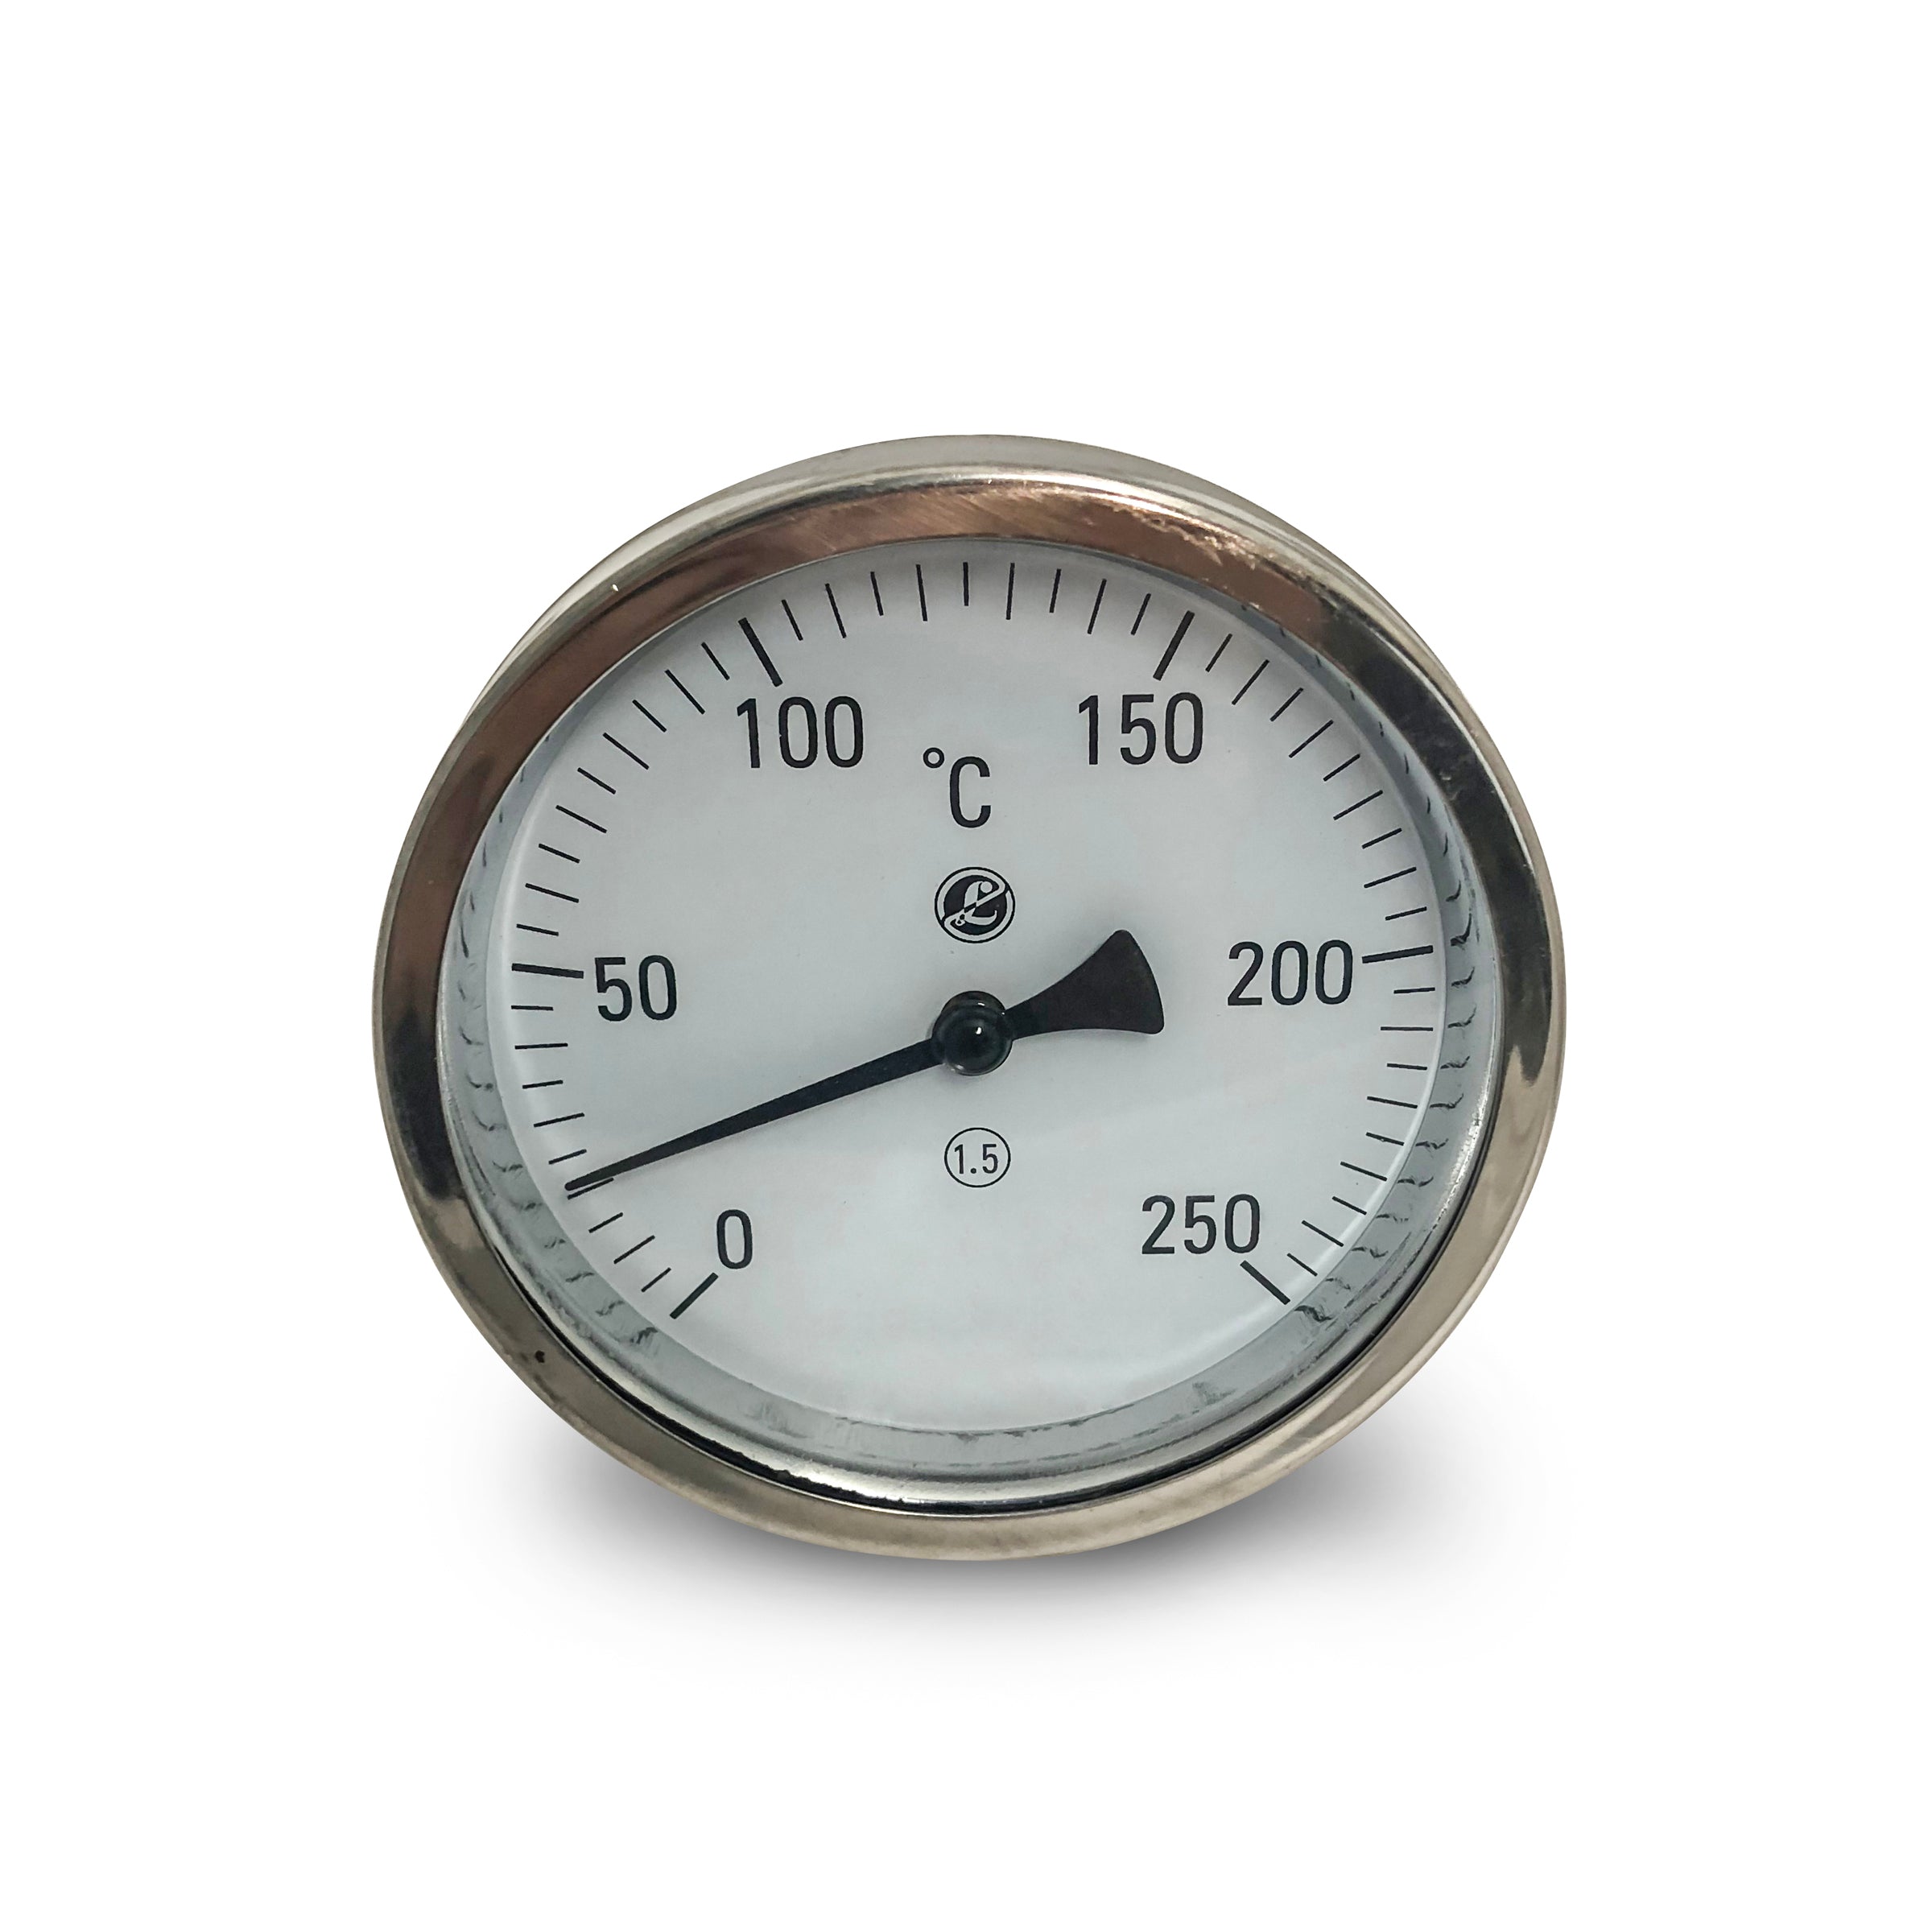 drum temperature gauge